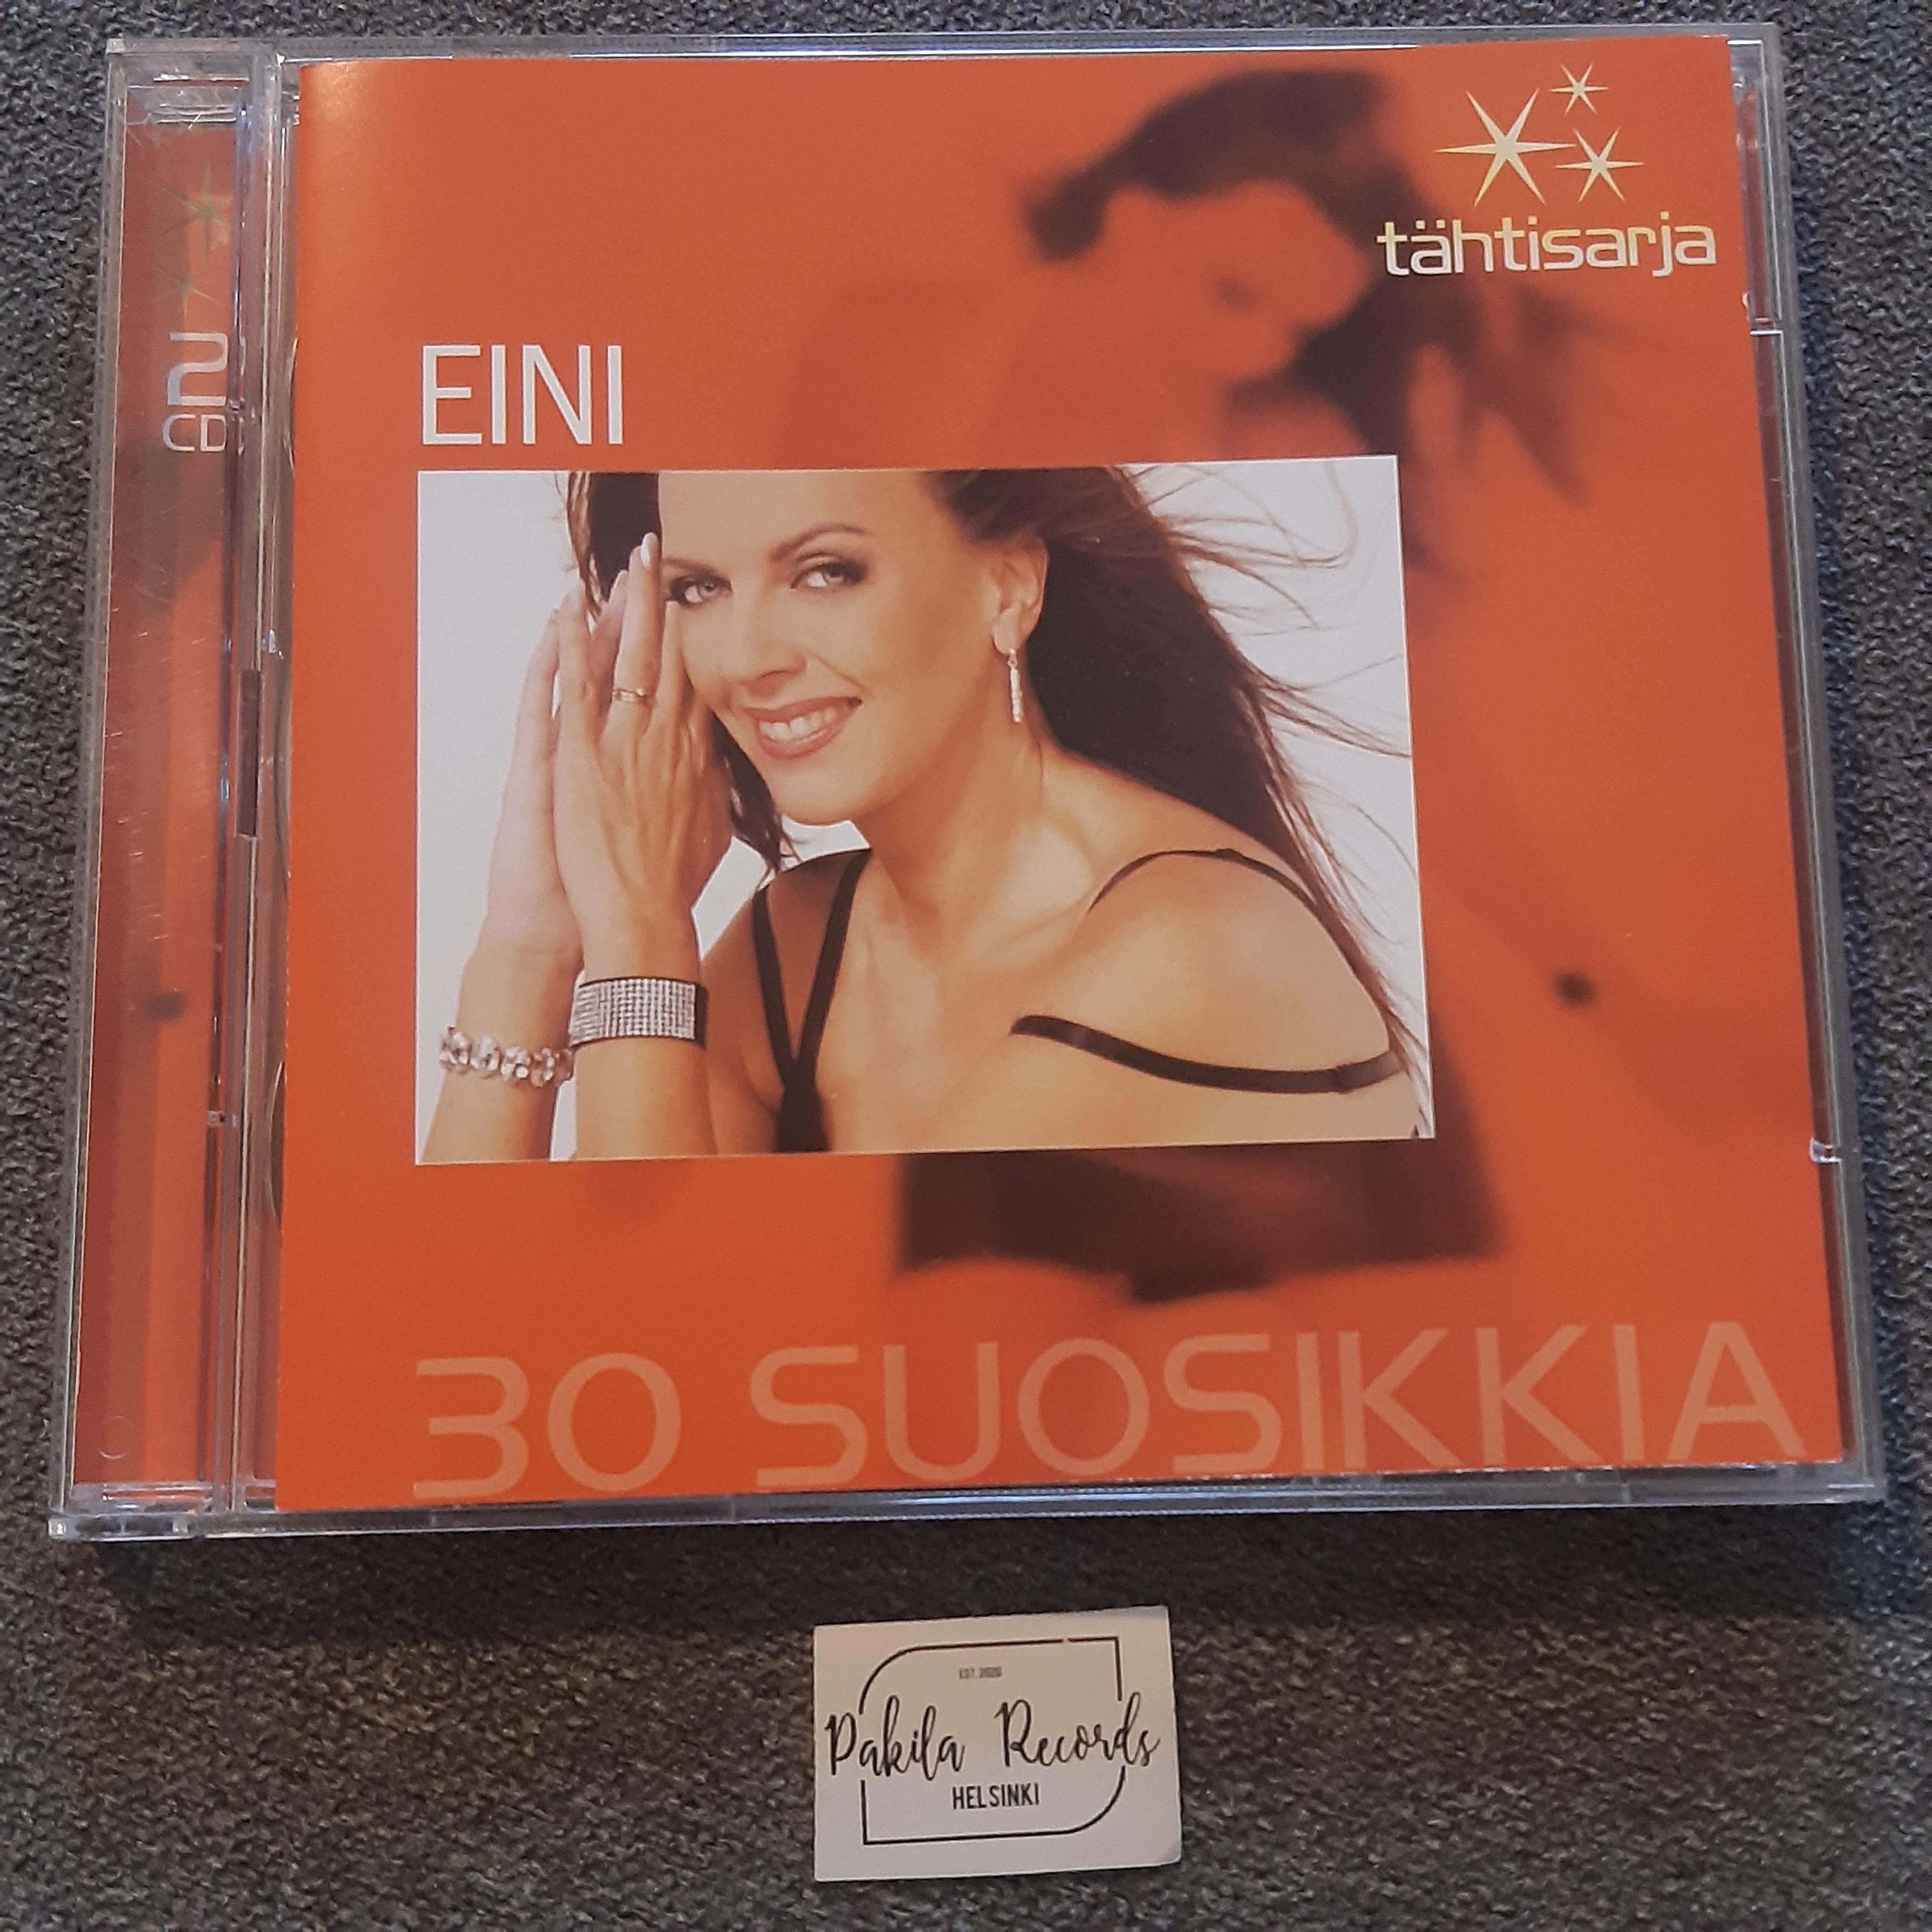 Eini - 30 suosikkia - 2 CD (käytetty)